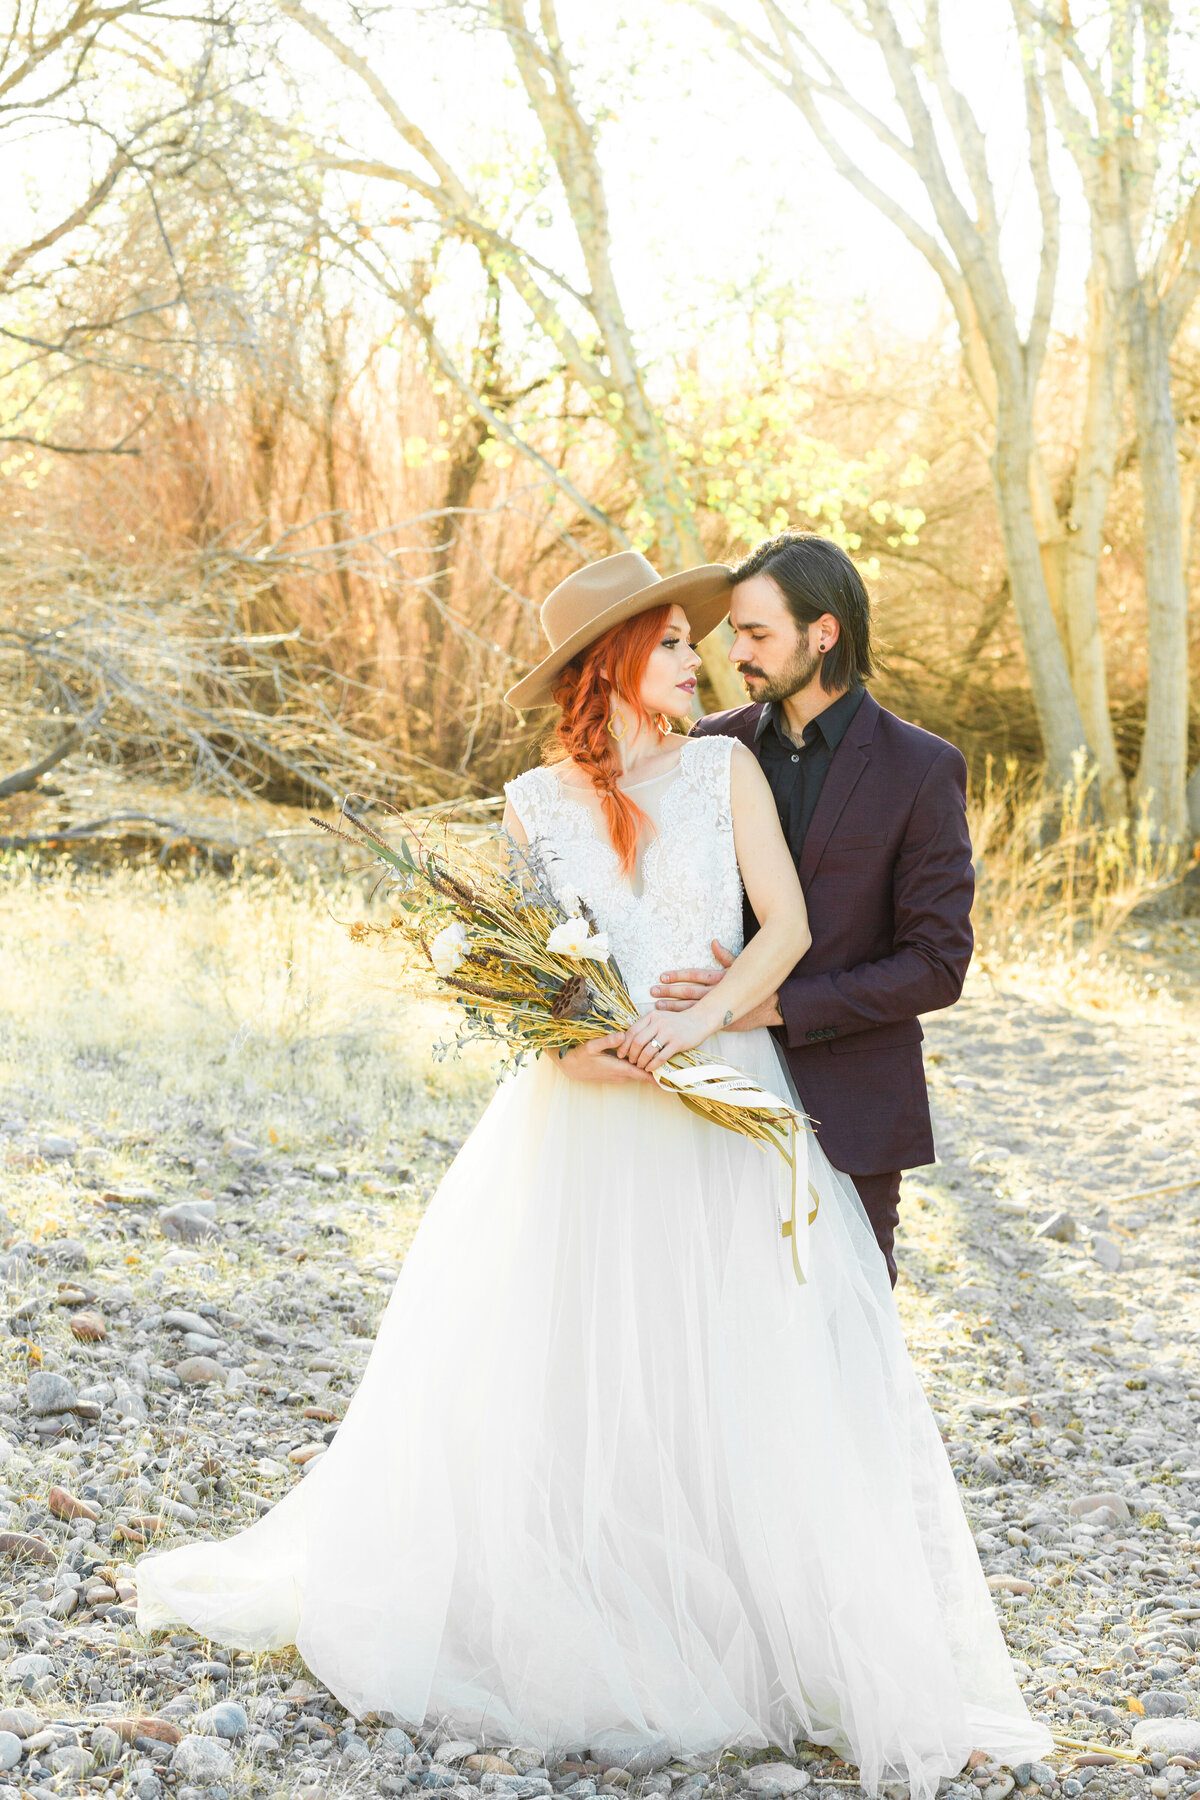 Wedding Couple's Portrait Photography - Saguaro Lake Arizona - Bayley Jordan Photography